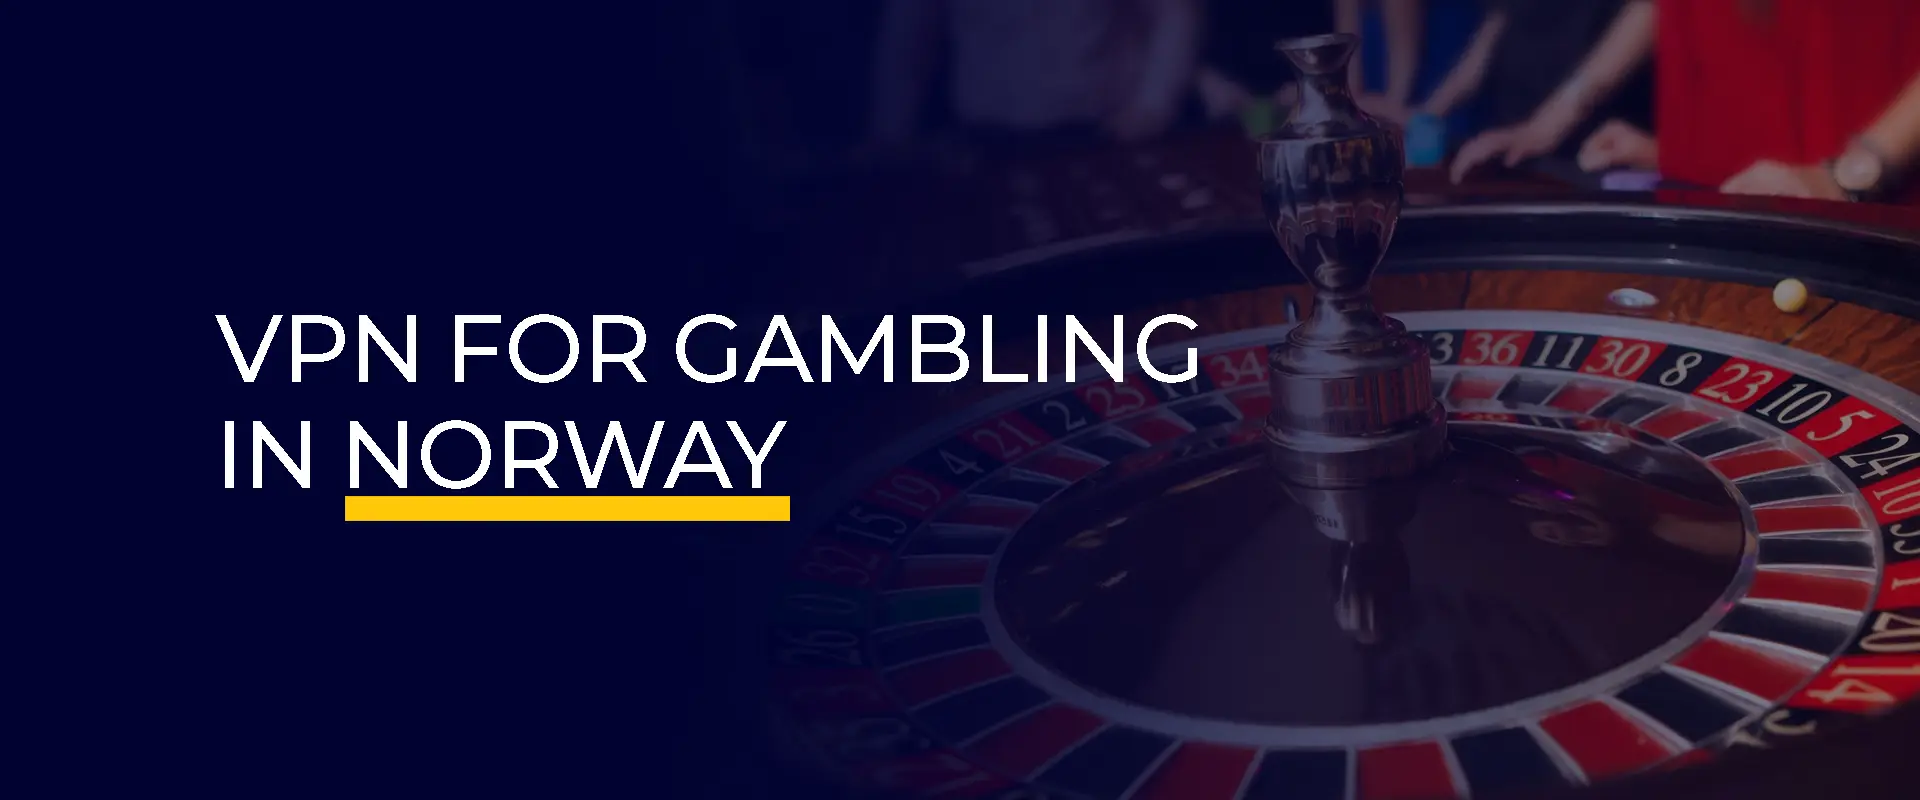 VPN for Gambling in Norway